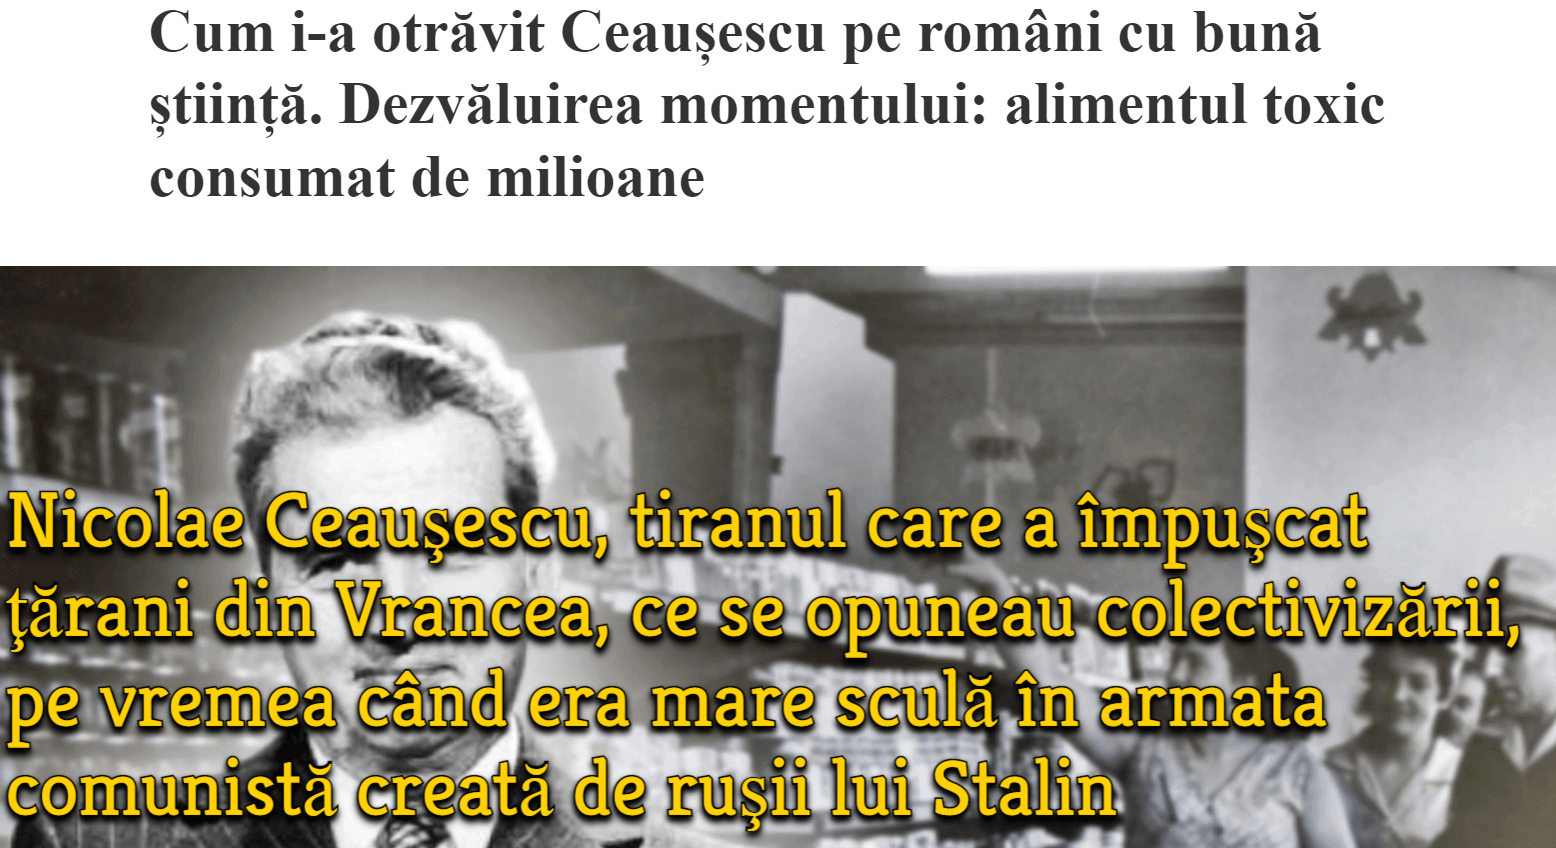 Ceausescu, alimente otravite